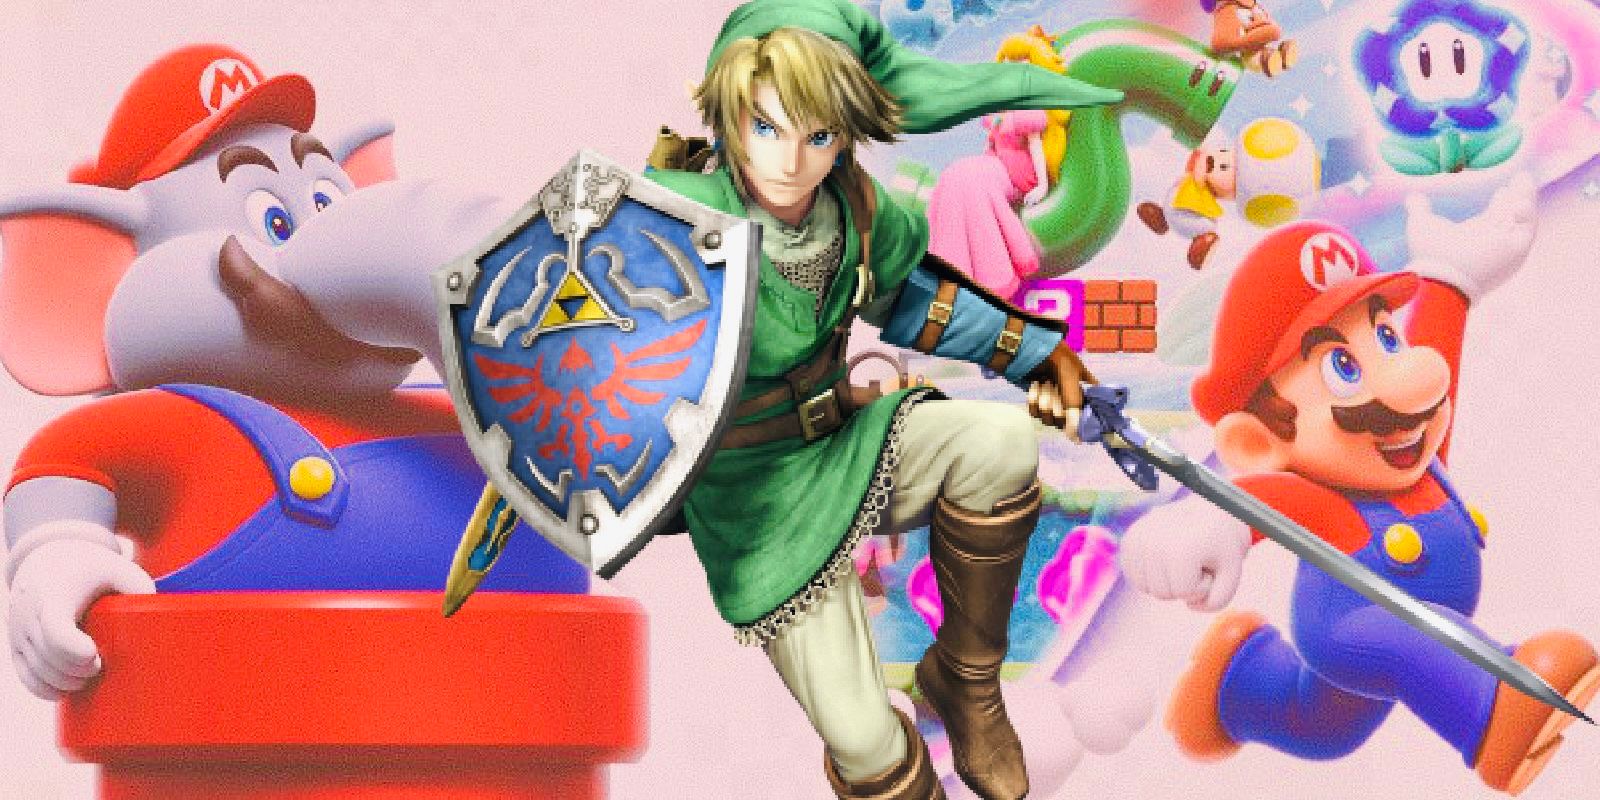 Link from the legend of zelda in front of super Mario bros wonder promo art